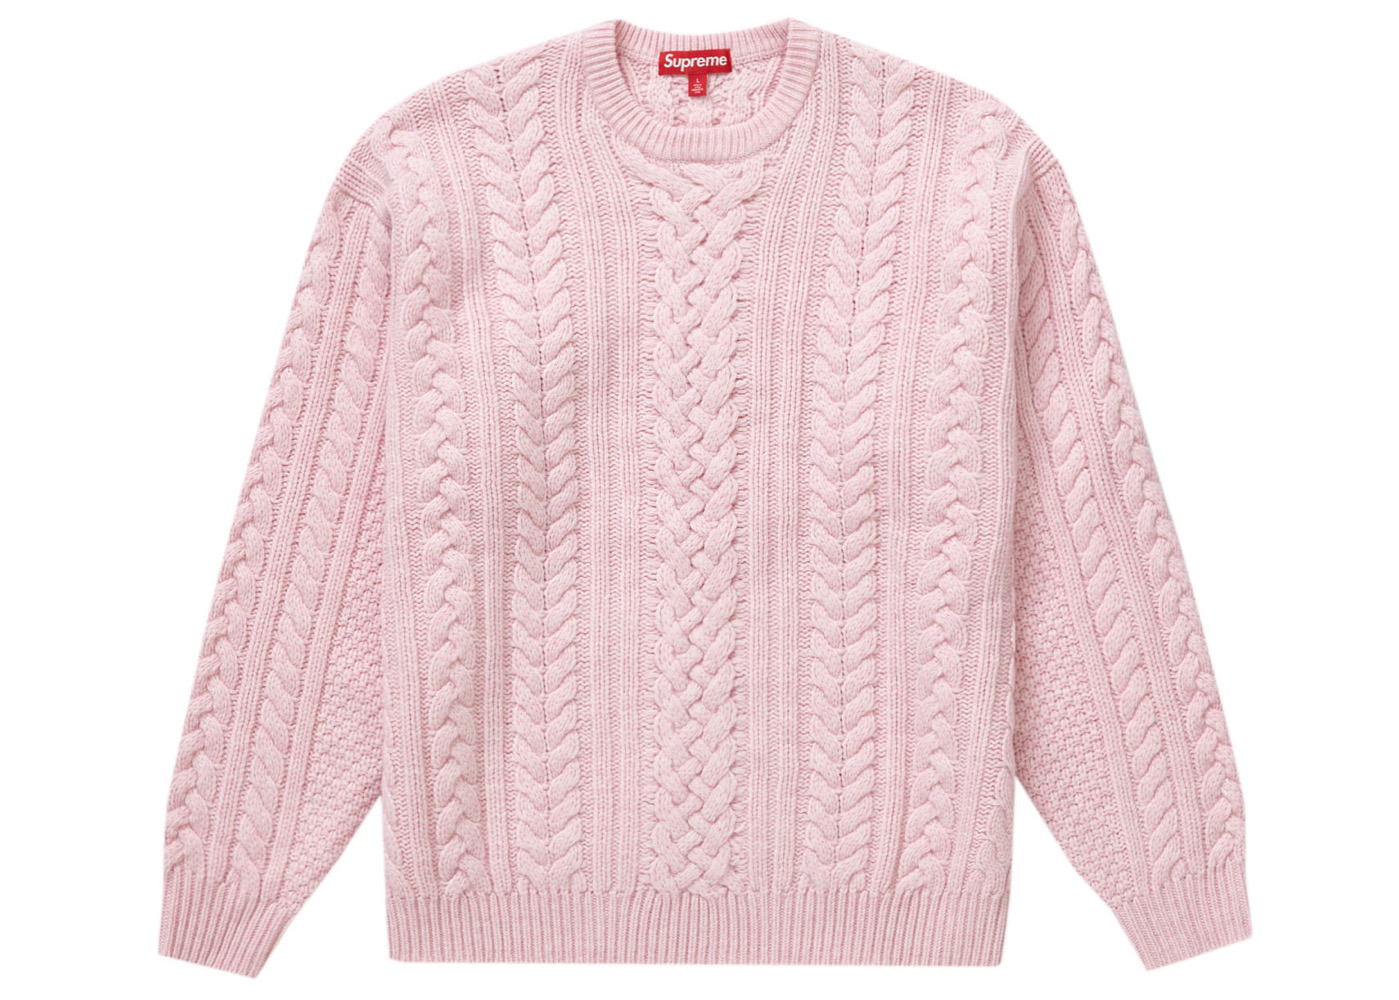 5万円即決可能ですSupreme Applique Cable Knit Sweater pink